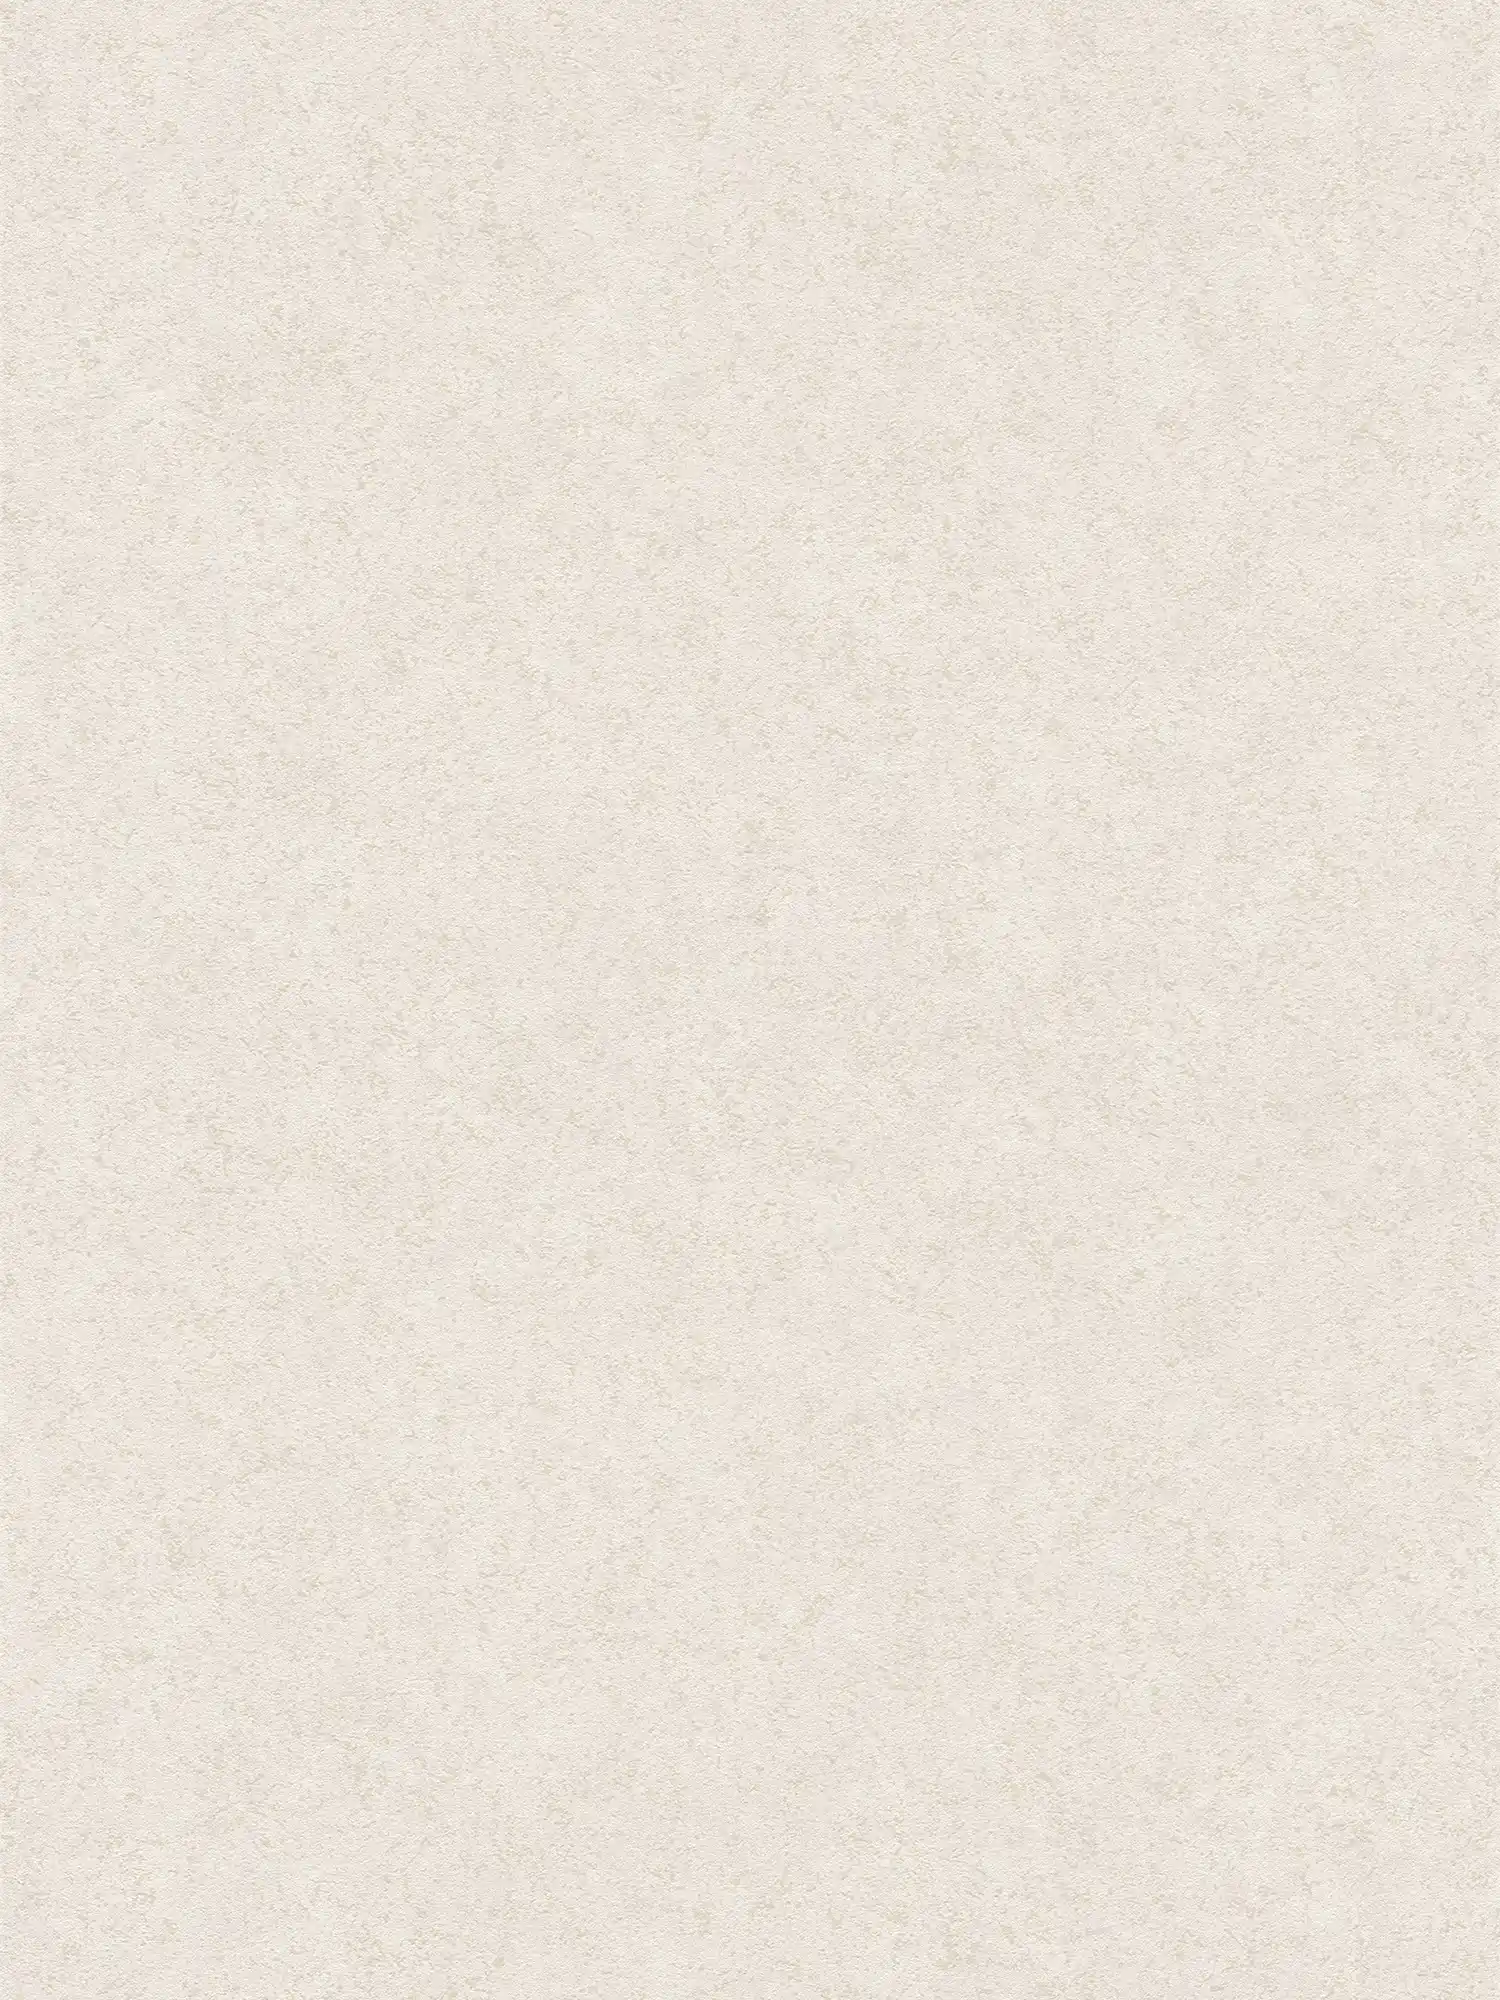 Carta da parati in tessuto non tessuto opaco con effetto intonaco - beige, bianco
